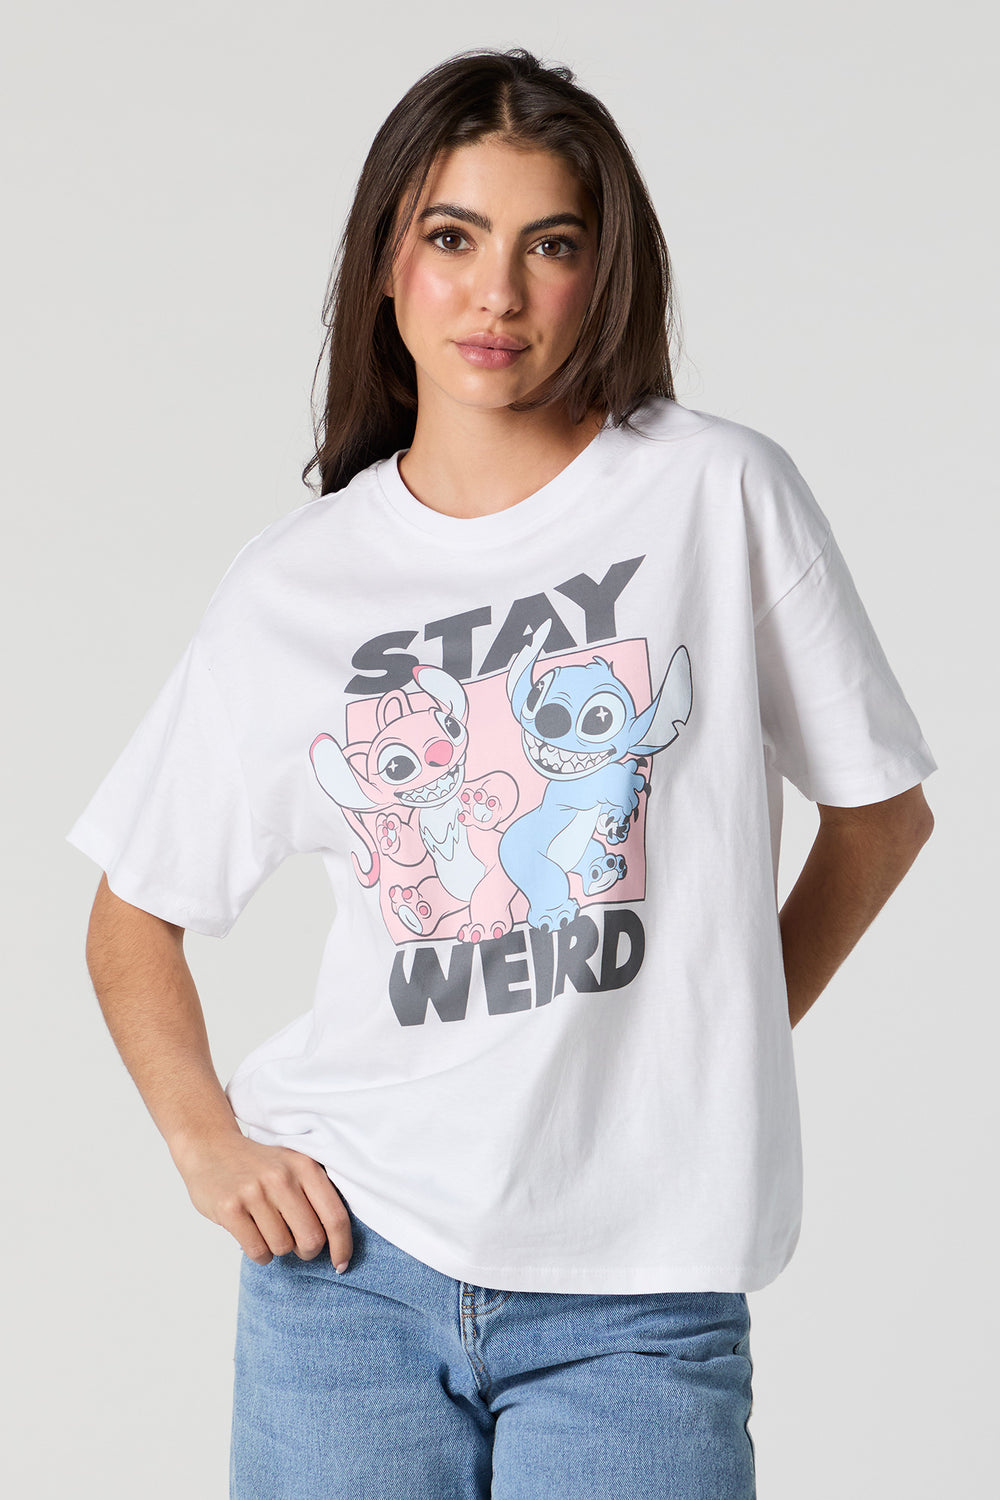 Stay Weird Stitch Graphic Boyfriend T-Shirt Stay Weird Stitch Graphic Boyfriend T-Shirt 2